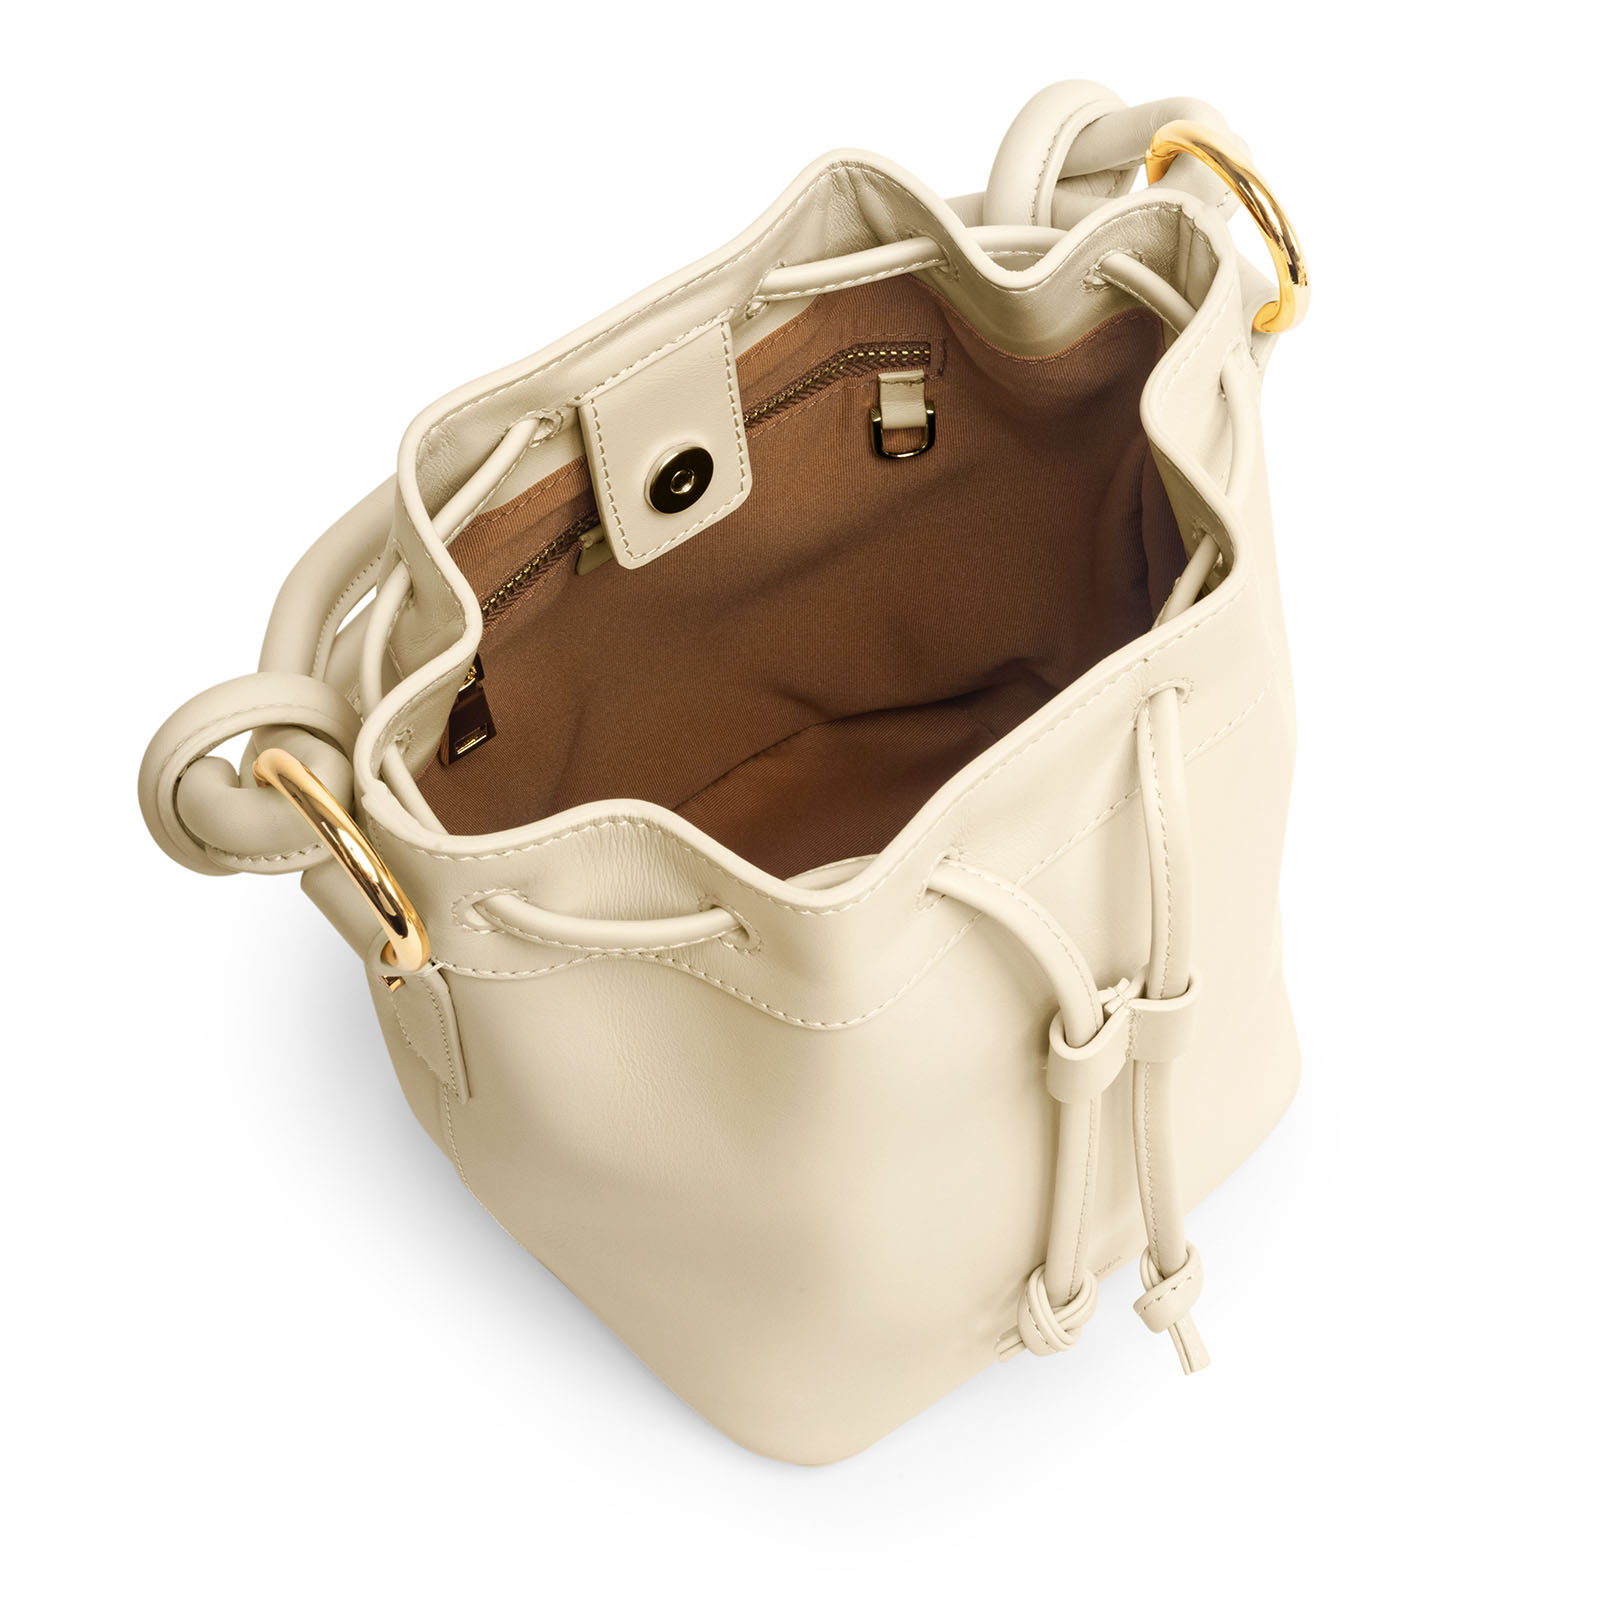 VERA Coco Bucket leather crossbody bag